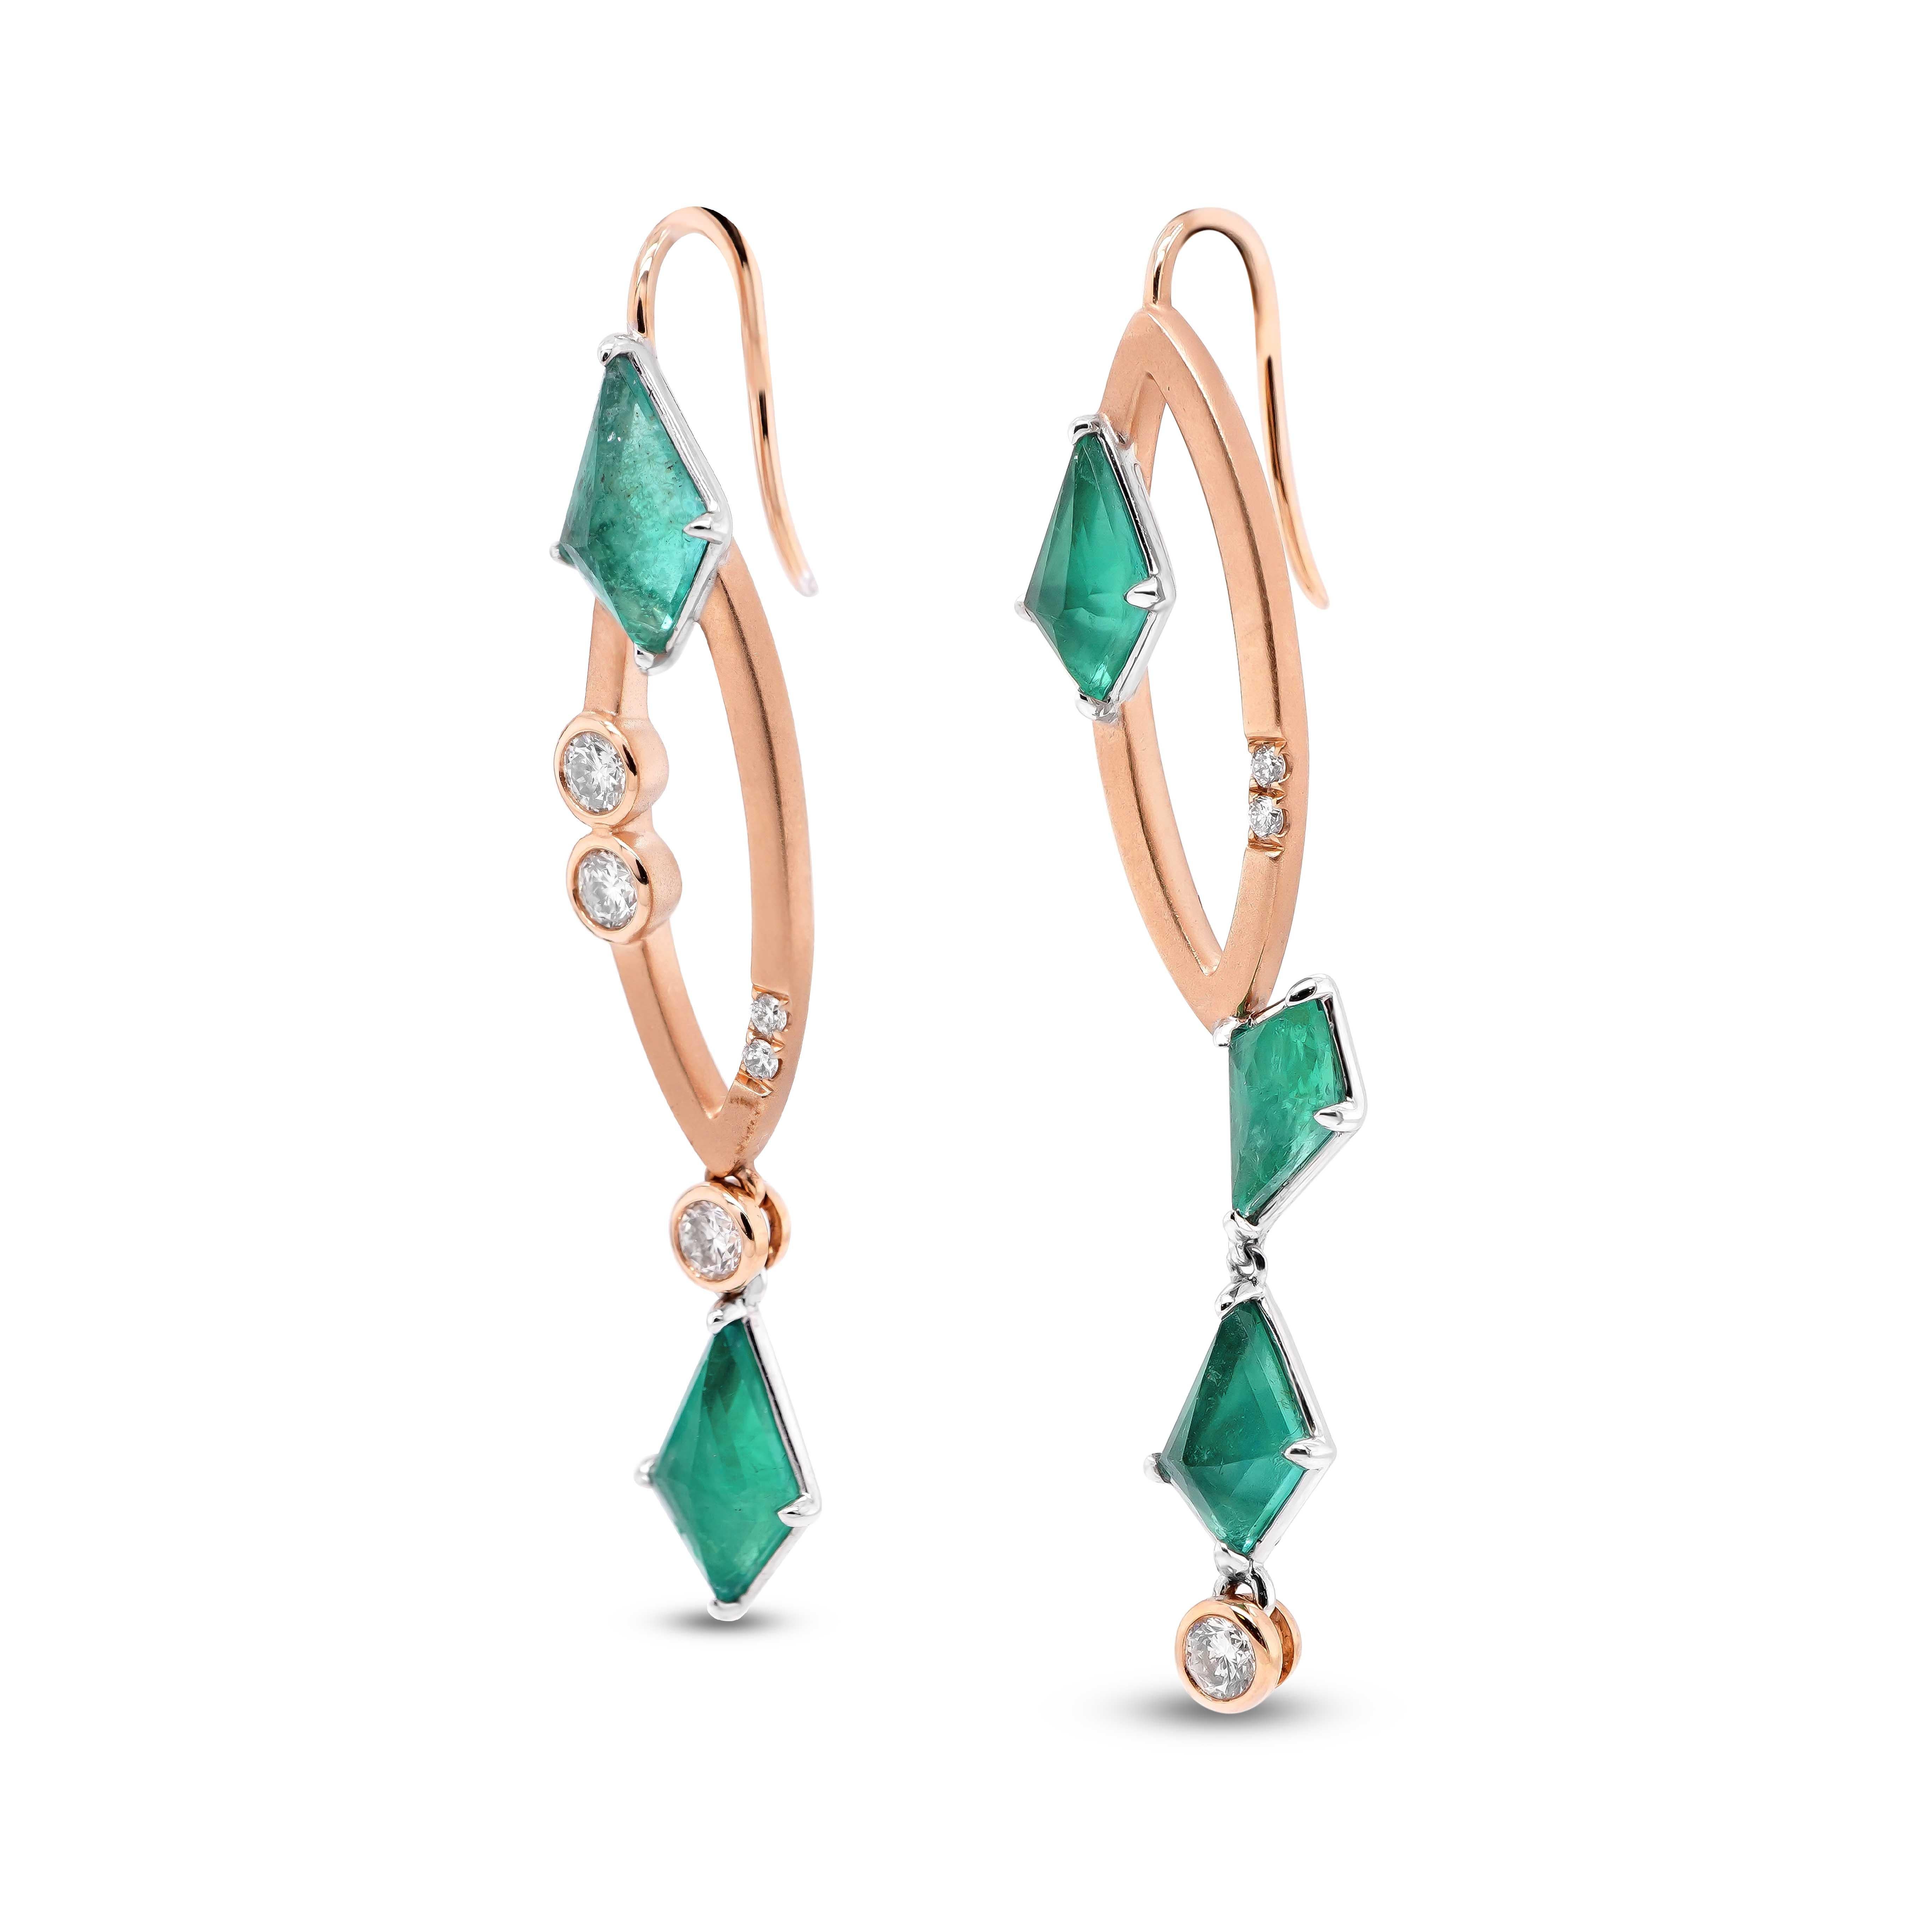 Ein Paar asymmetrische Ohrringe, bestehend aus drachenförmigen Smaragden und weißen Diamanten. Insgesamt 3,35 Karat eleganter, lang geschliffener, drachenförmiger Smaragd sind mit 0,44 Karat weißem, rundem Brillanten besetzt.
Diese grün gefärbten